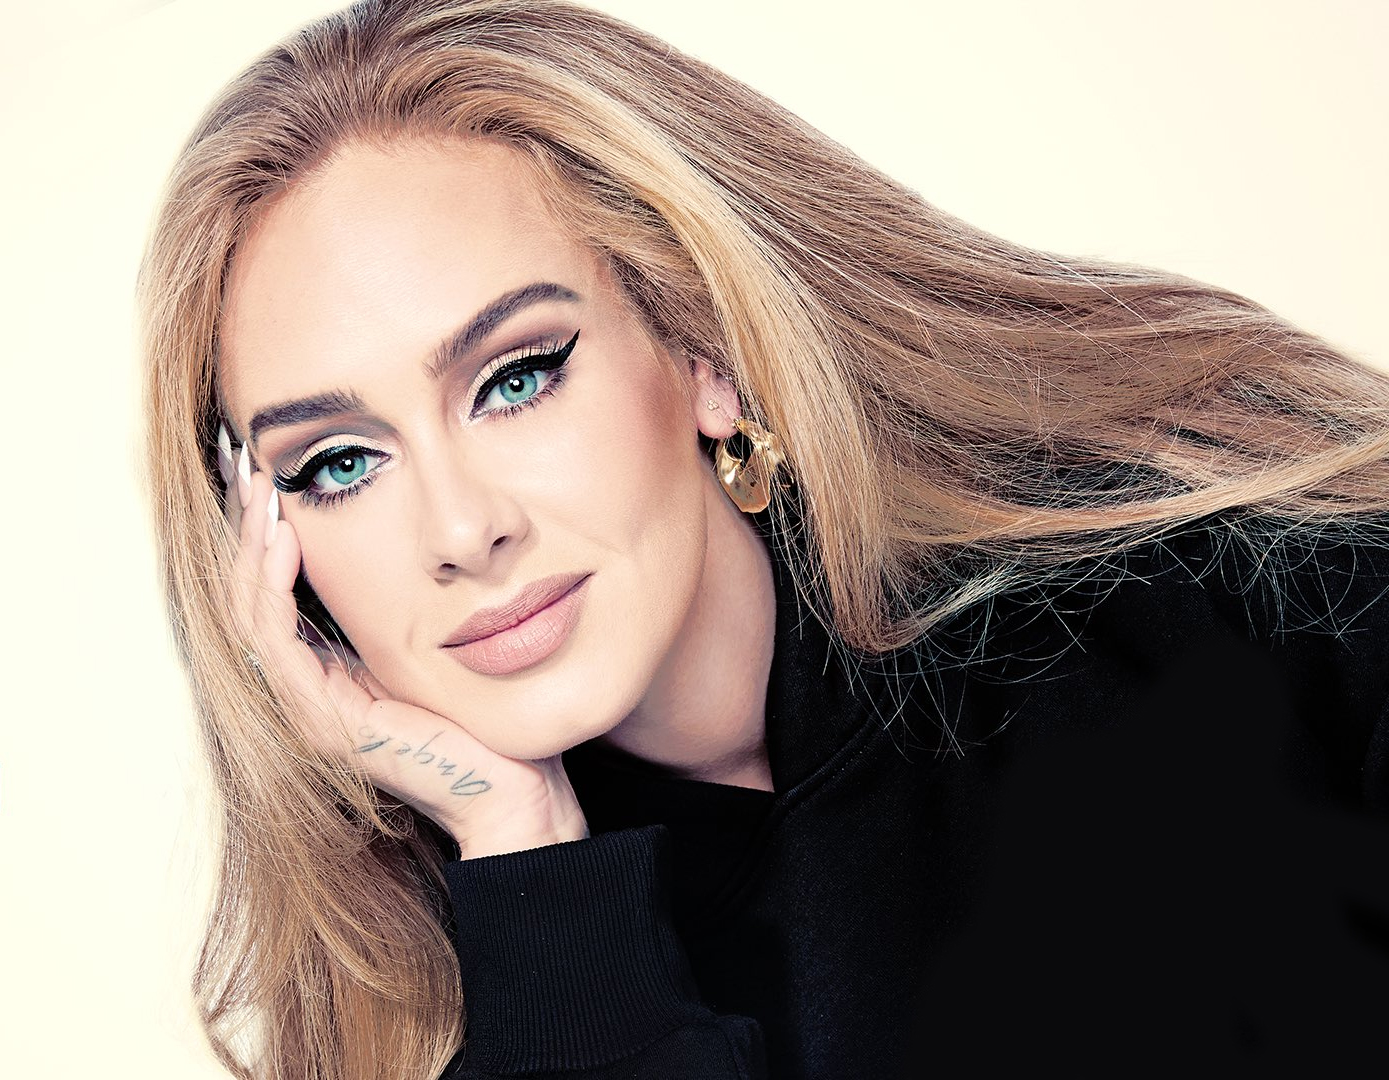 Álbum da Adele "está muito próximo", diz revista